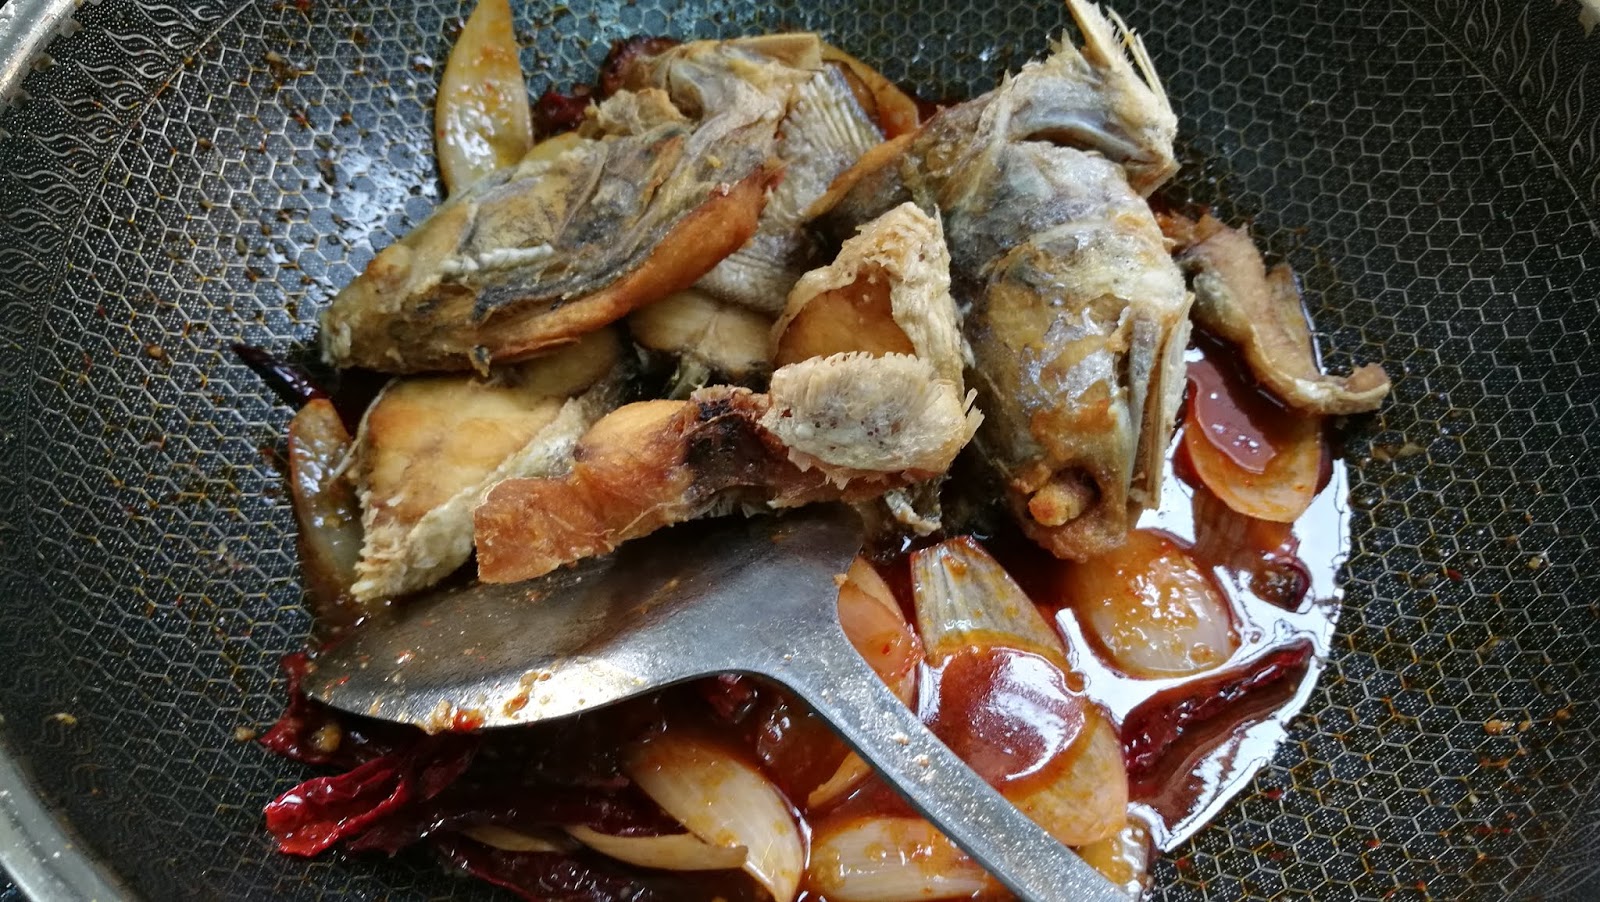 美味情缘: 油浸马友鱼 Deep-fried Crispy Fish with Soy Sauce